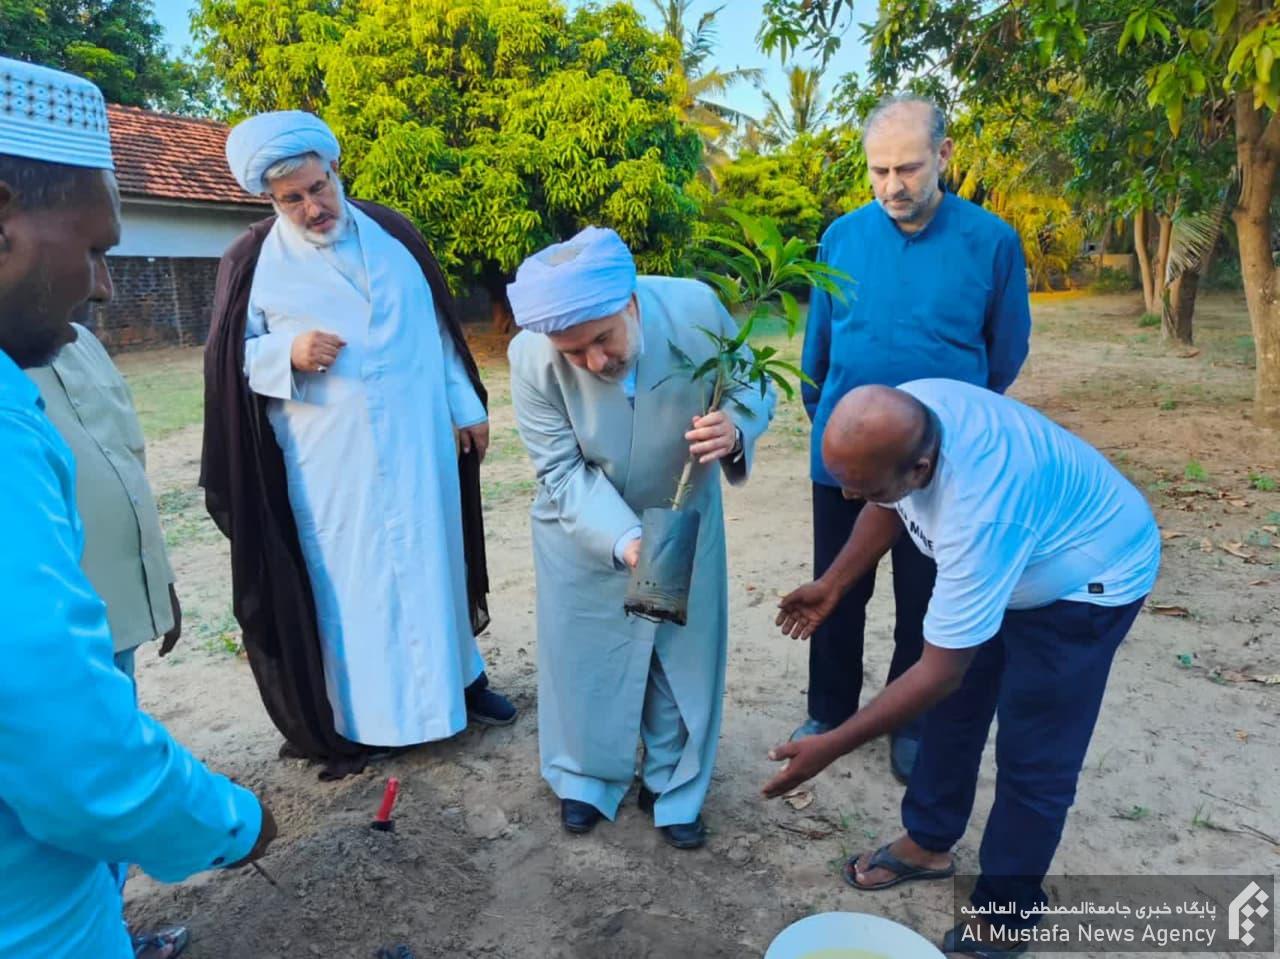 آیت الله دکتر عباسی در سفر خود به سریلانکا، یک اصله نهال درخت نارگیل را در محل نمایندگی جامعةالمصطفی کاشت.